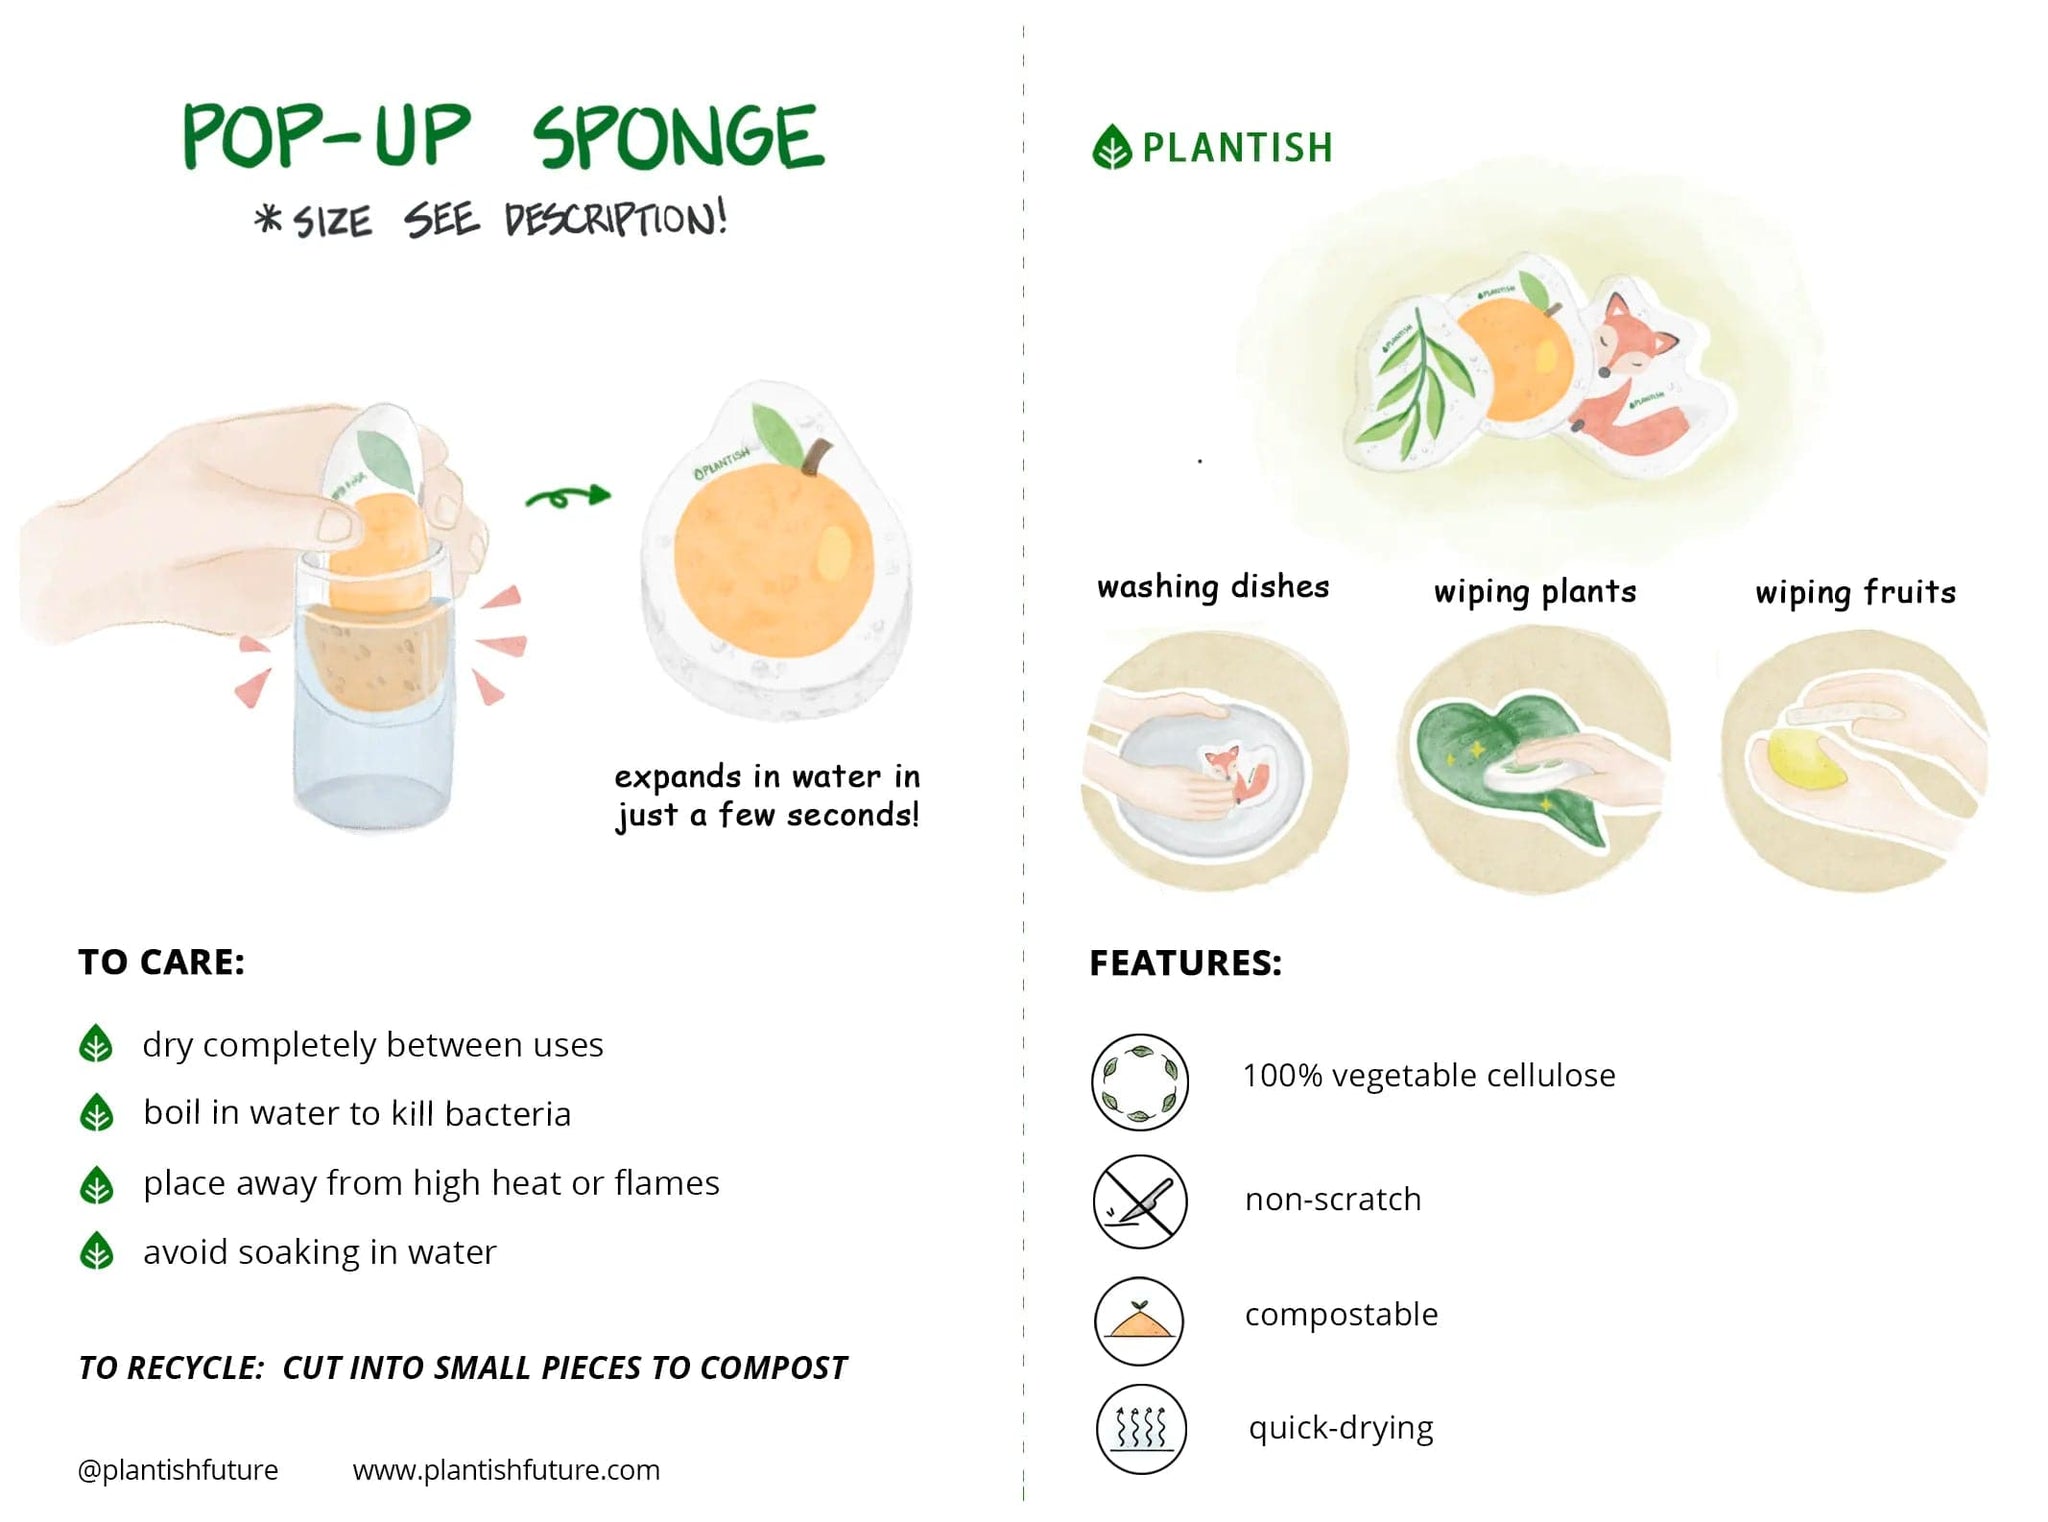 Care tips for Axolotl pop-up sponge.